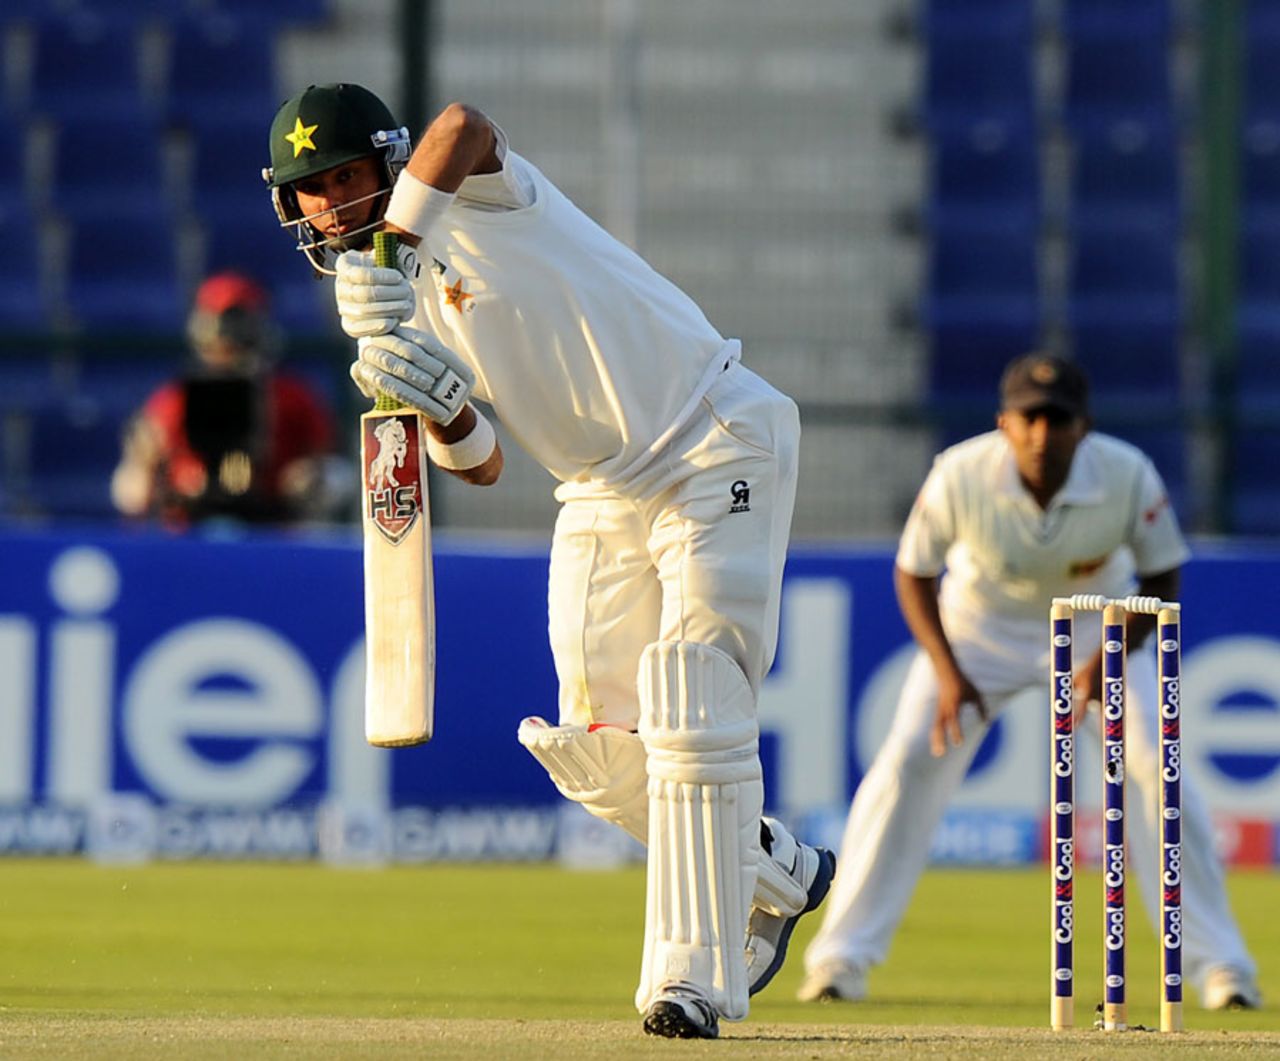 Khurram Manzoor hit four fours, Pakistan v Sri Lanka, 1st Test, Abu Dhabi, 1st day, December 31, 2013